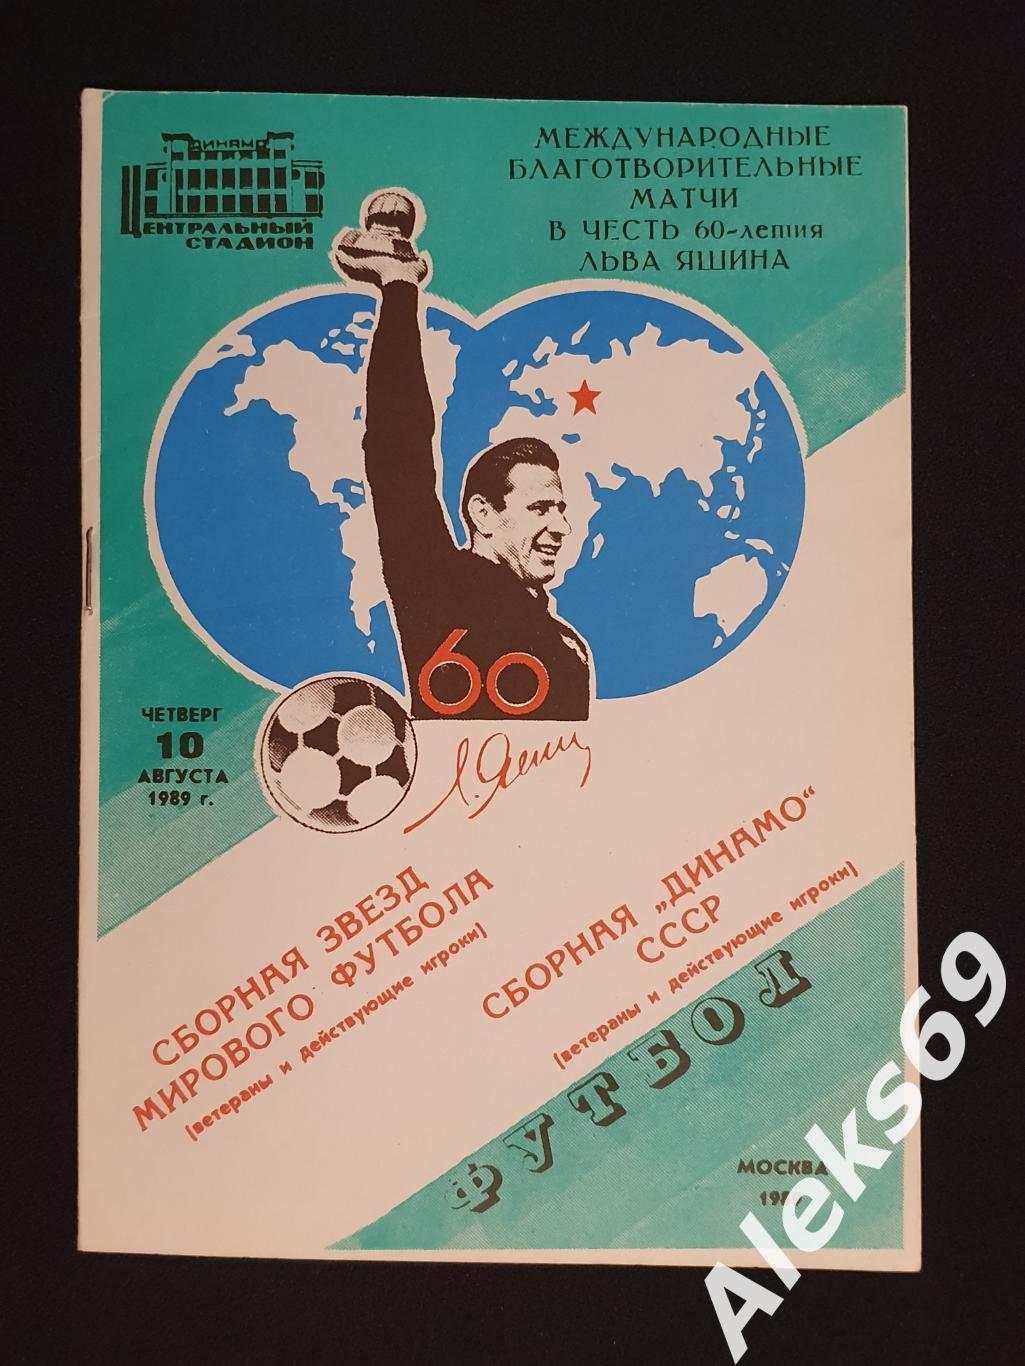 Сборная звезд мирового футбола - Сборная Динамо (Москва). 1989 год.